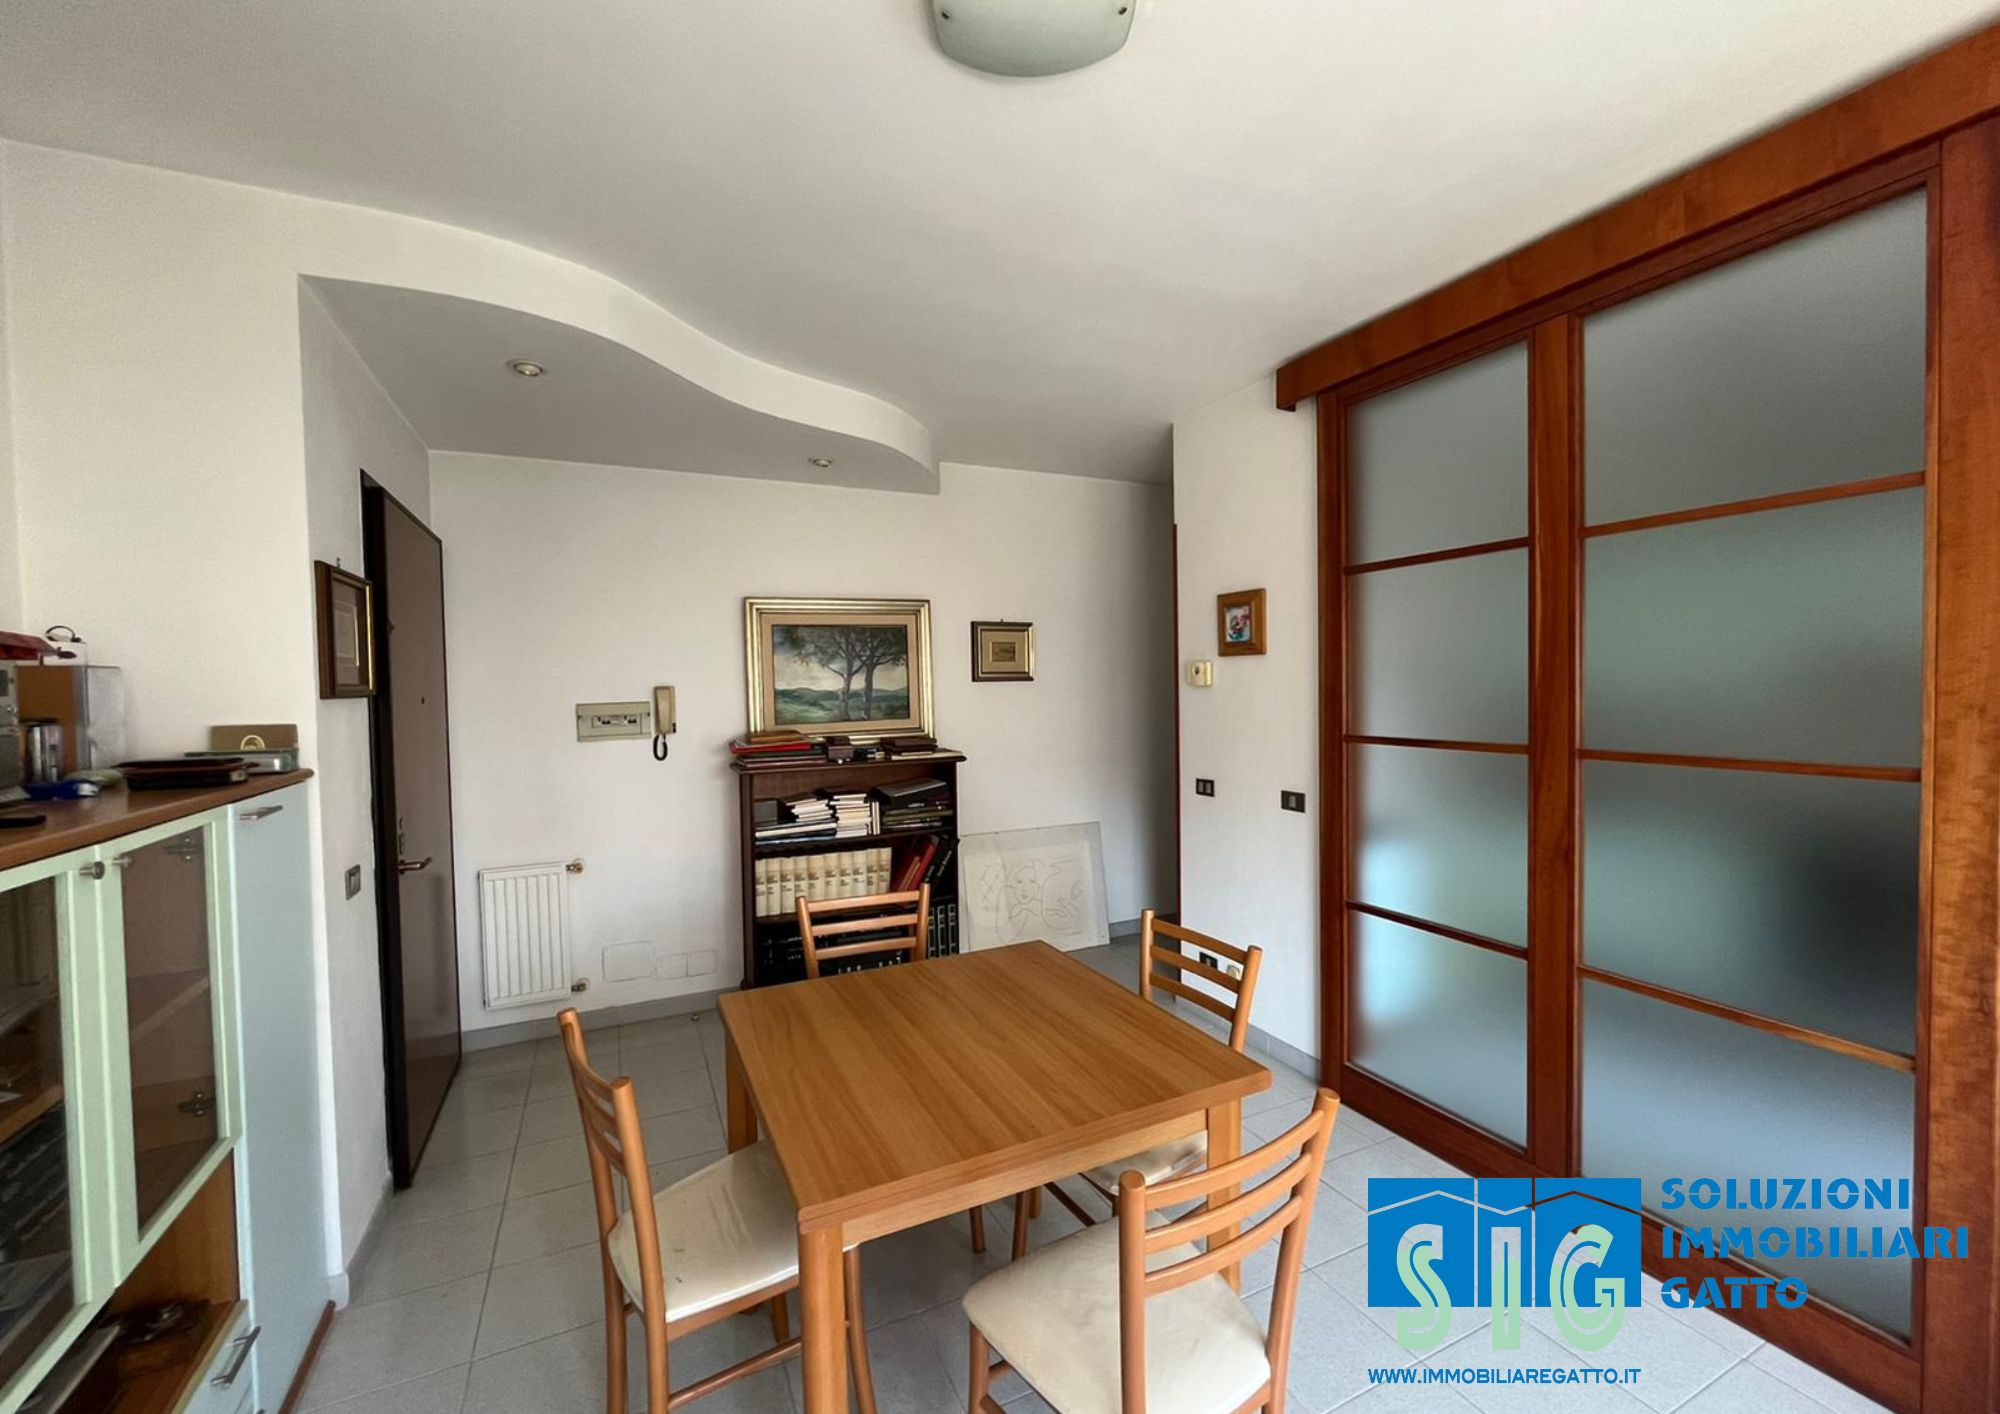 Latina, zona Isonzo, appartamento di mq 70 + balcone + cantina